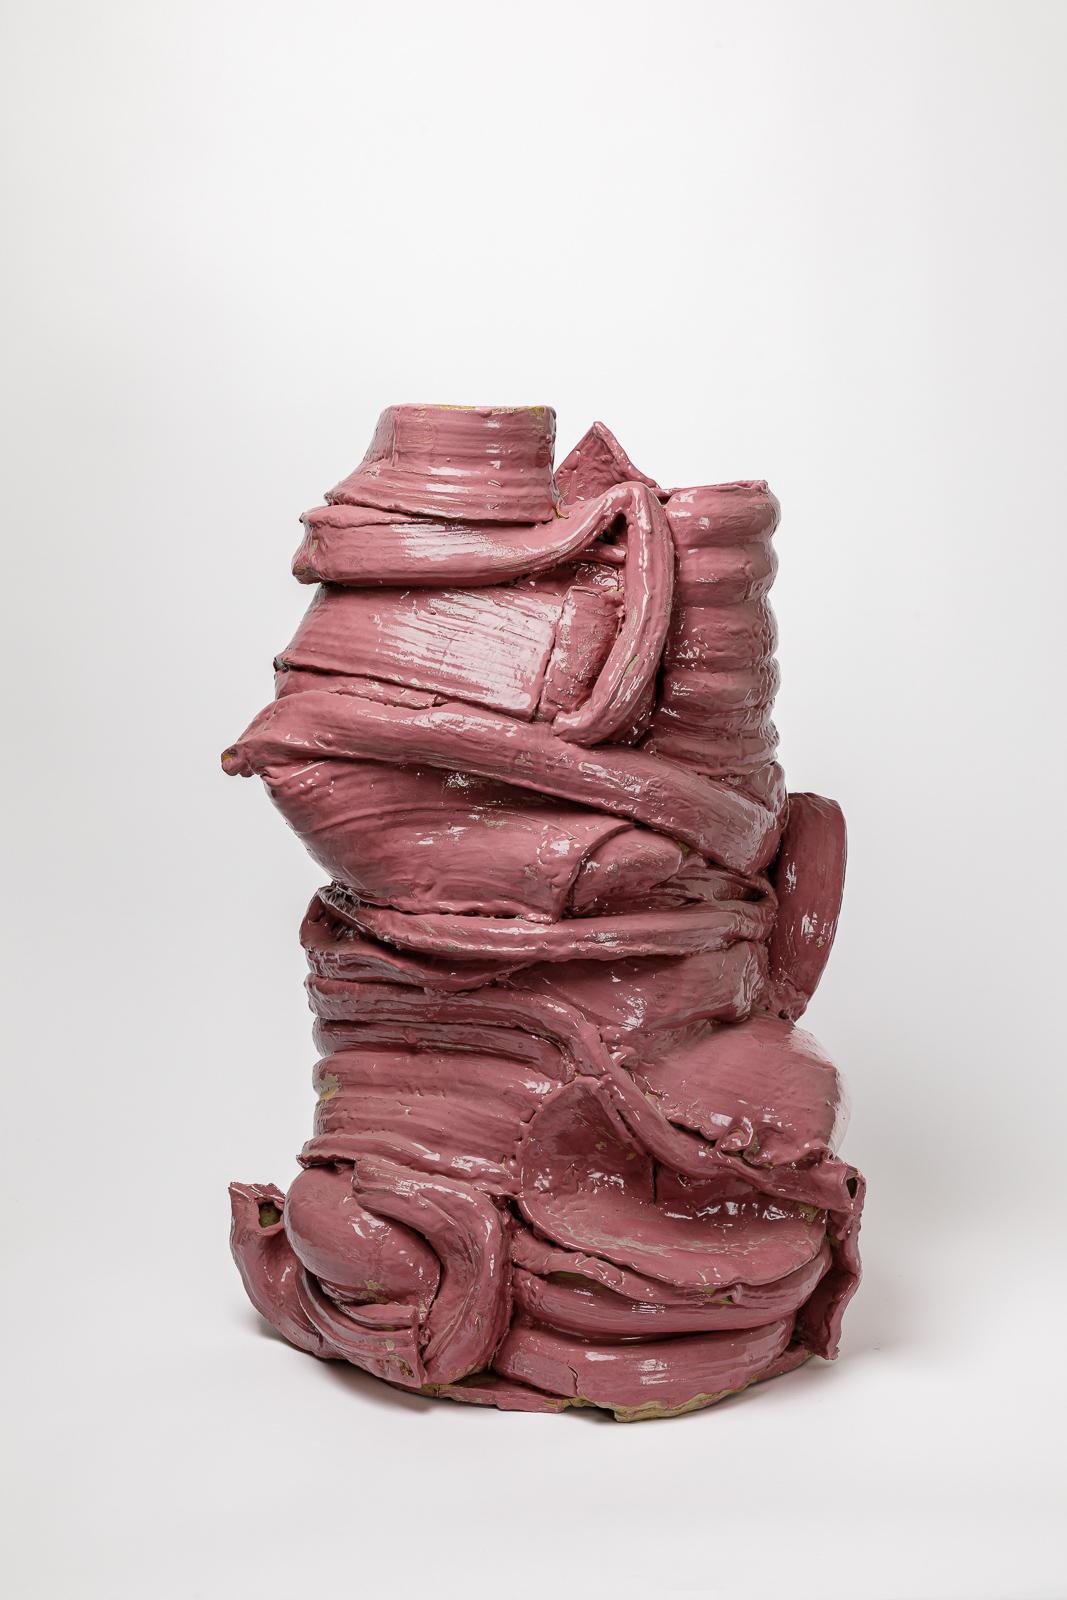 Grand vase de sol en céramique émaillée rose de Patrick Crulis. 2023. 
Pièce unique.
H : 69 x 47 x 39 cm / 27'2 x 18'1 x 15'3 inches.
Dimensions approximatives.